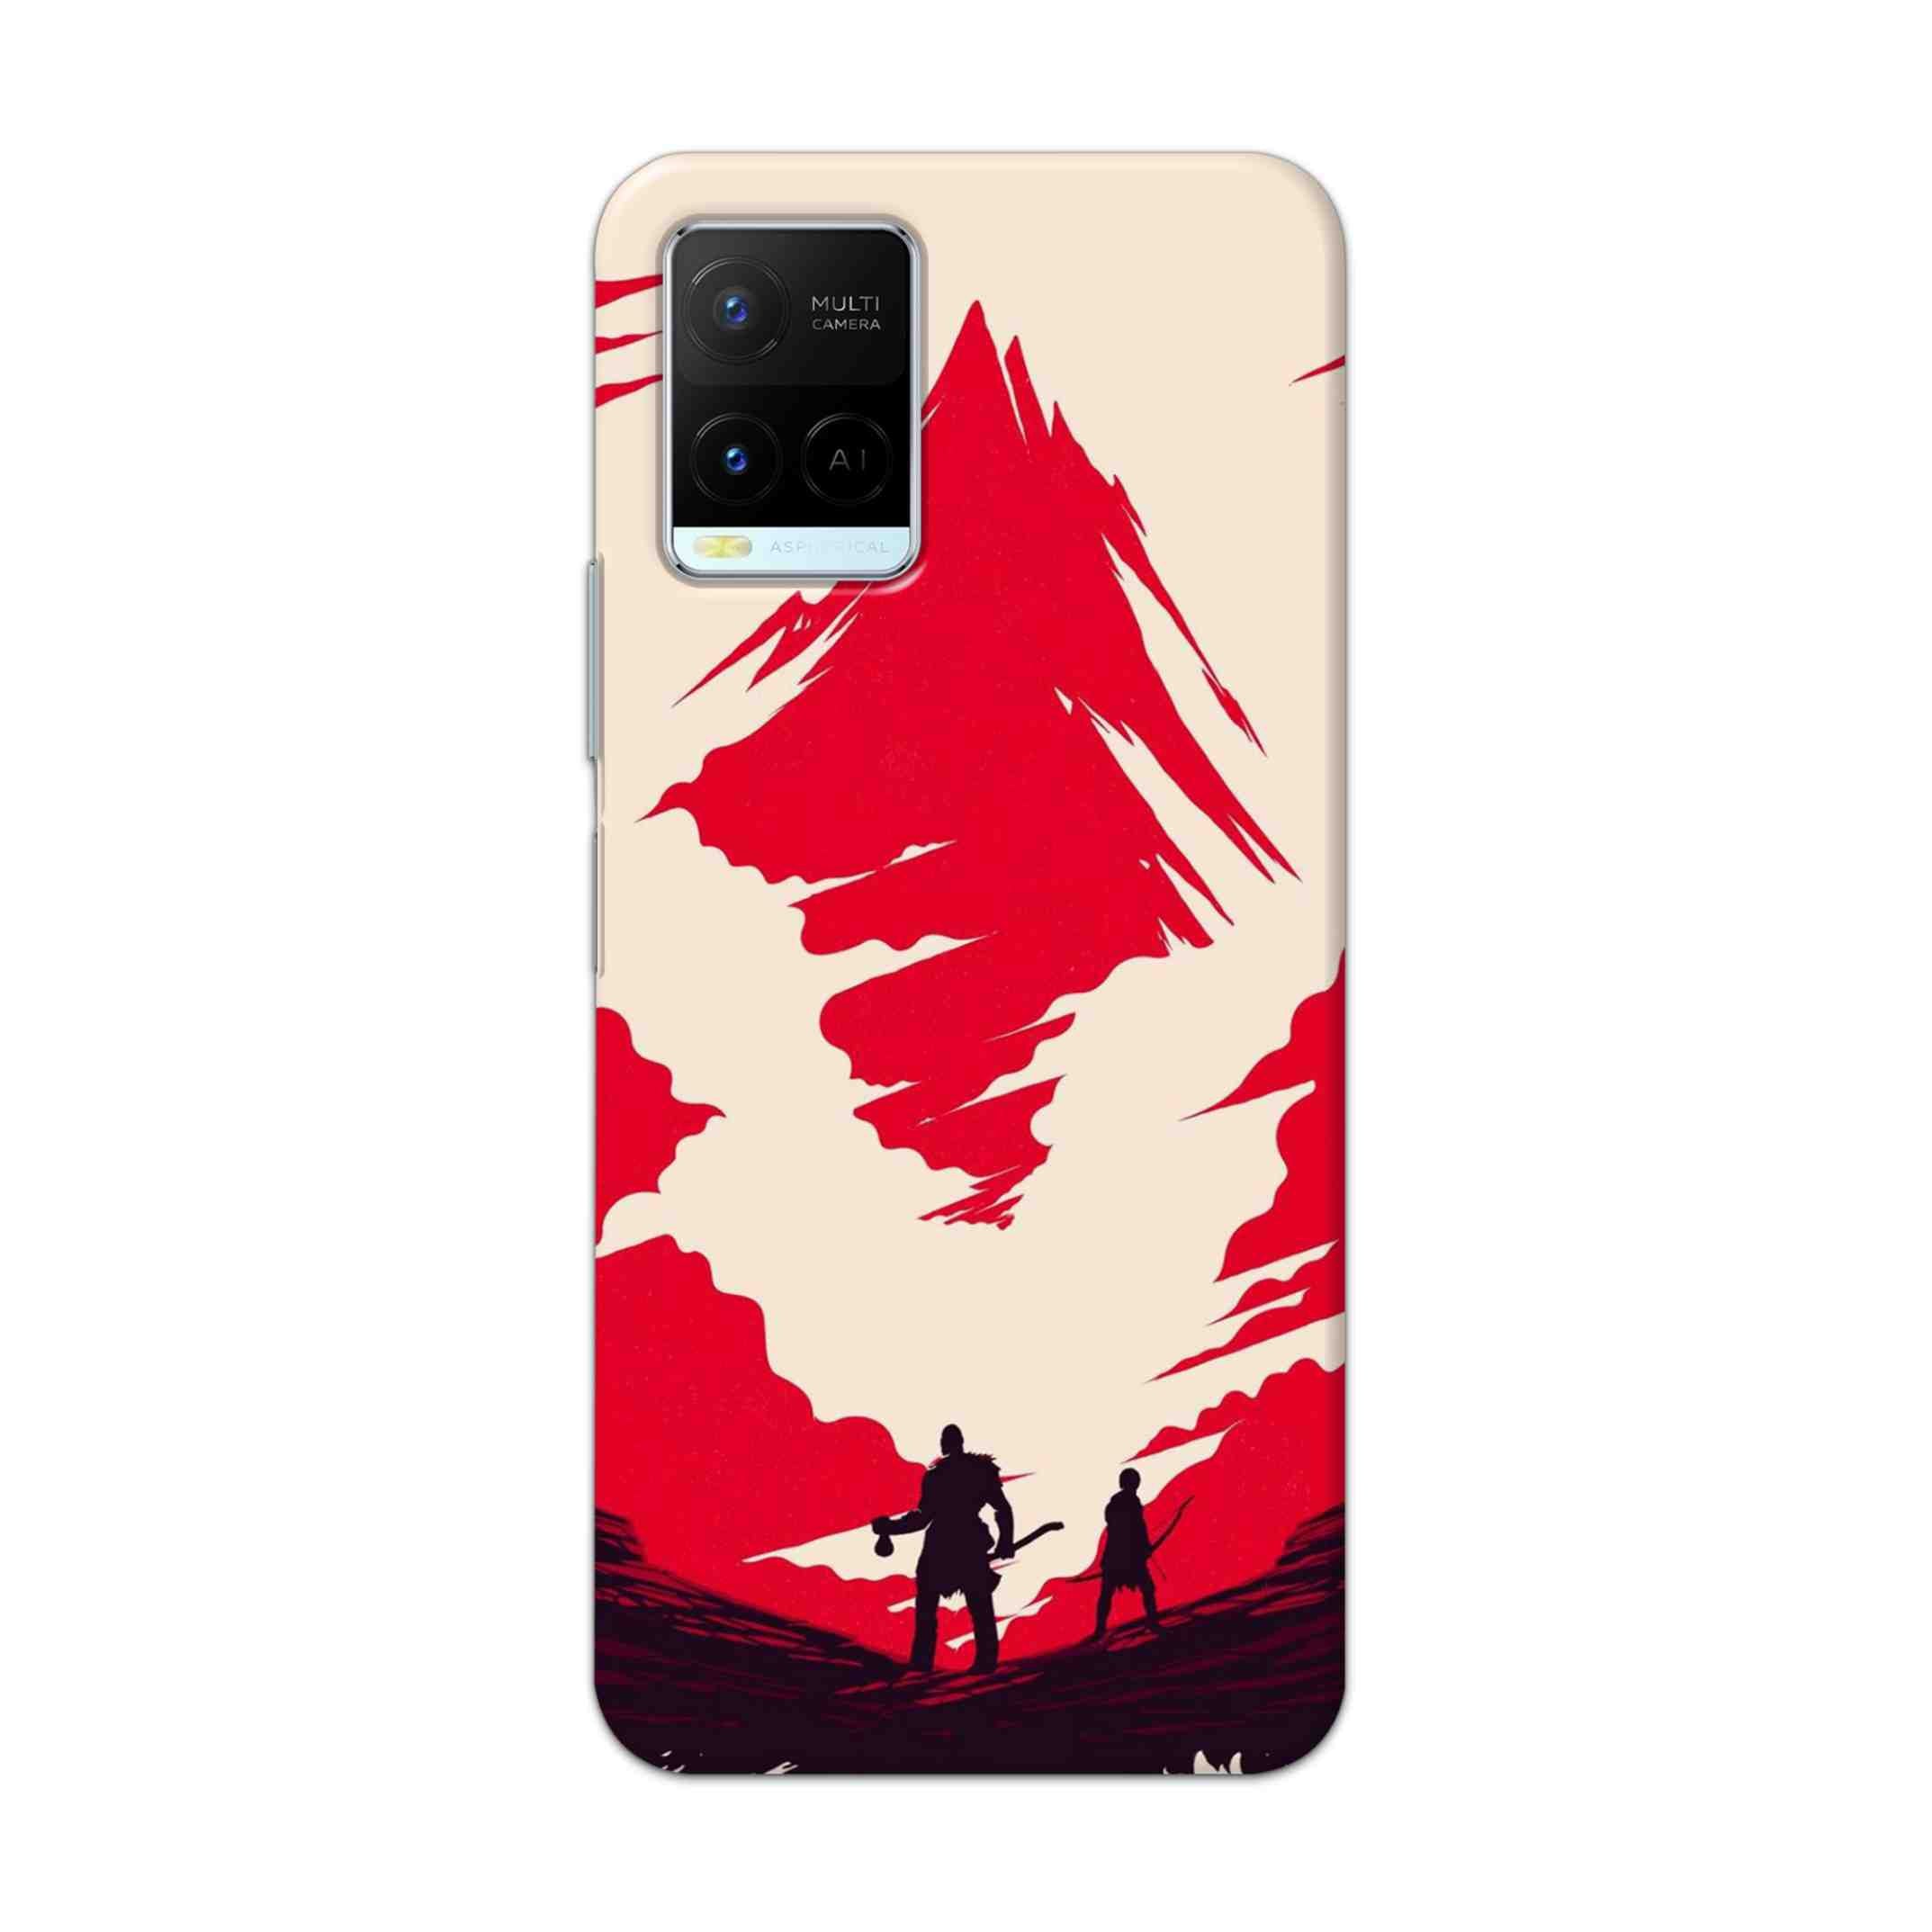 Buy God Of War Art Hard Back Mobile Phone Case Cover For Vivo Y21 2021 Online